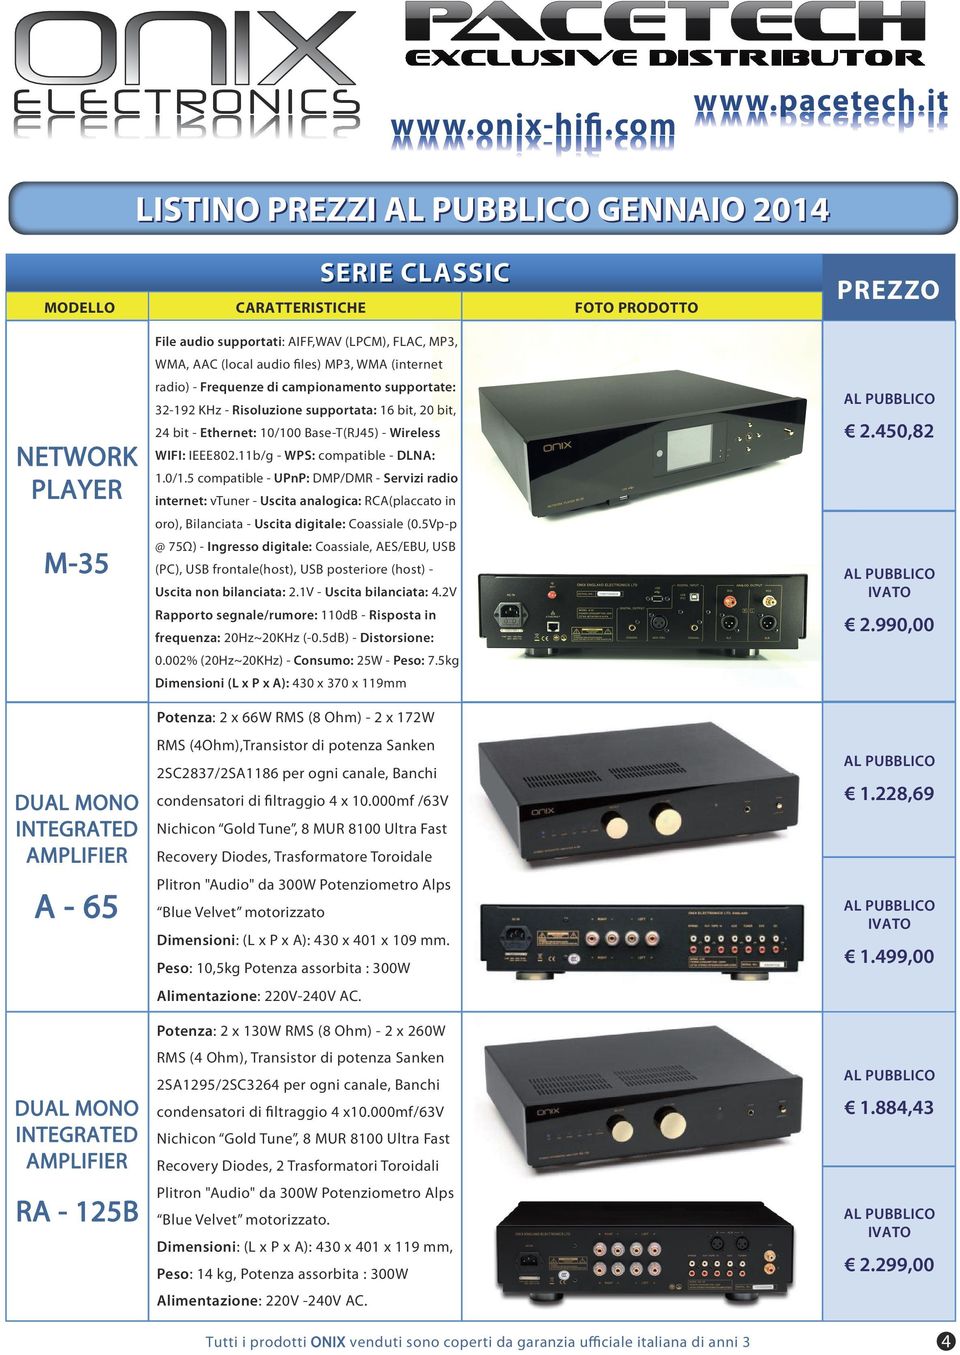 0 Base-T(RJ45) - Wireless 2.450,82 WIFI: IEEE802.11b/g - WPS: compatible - DLNA: 1.0/1.